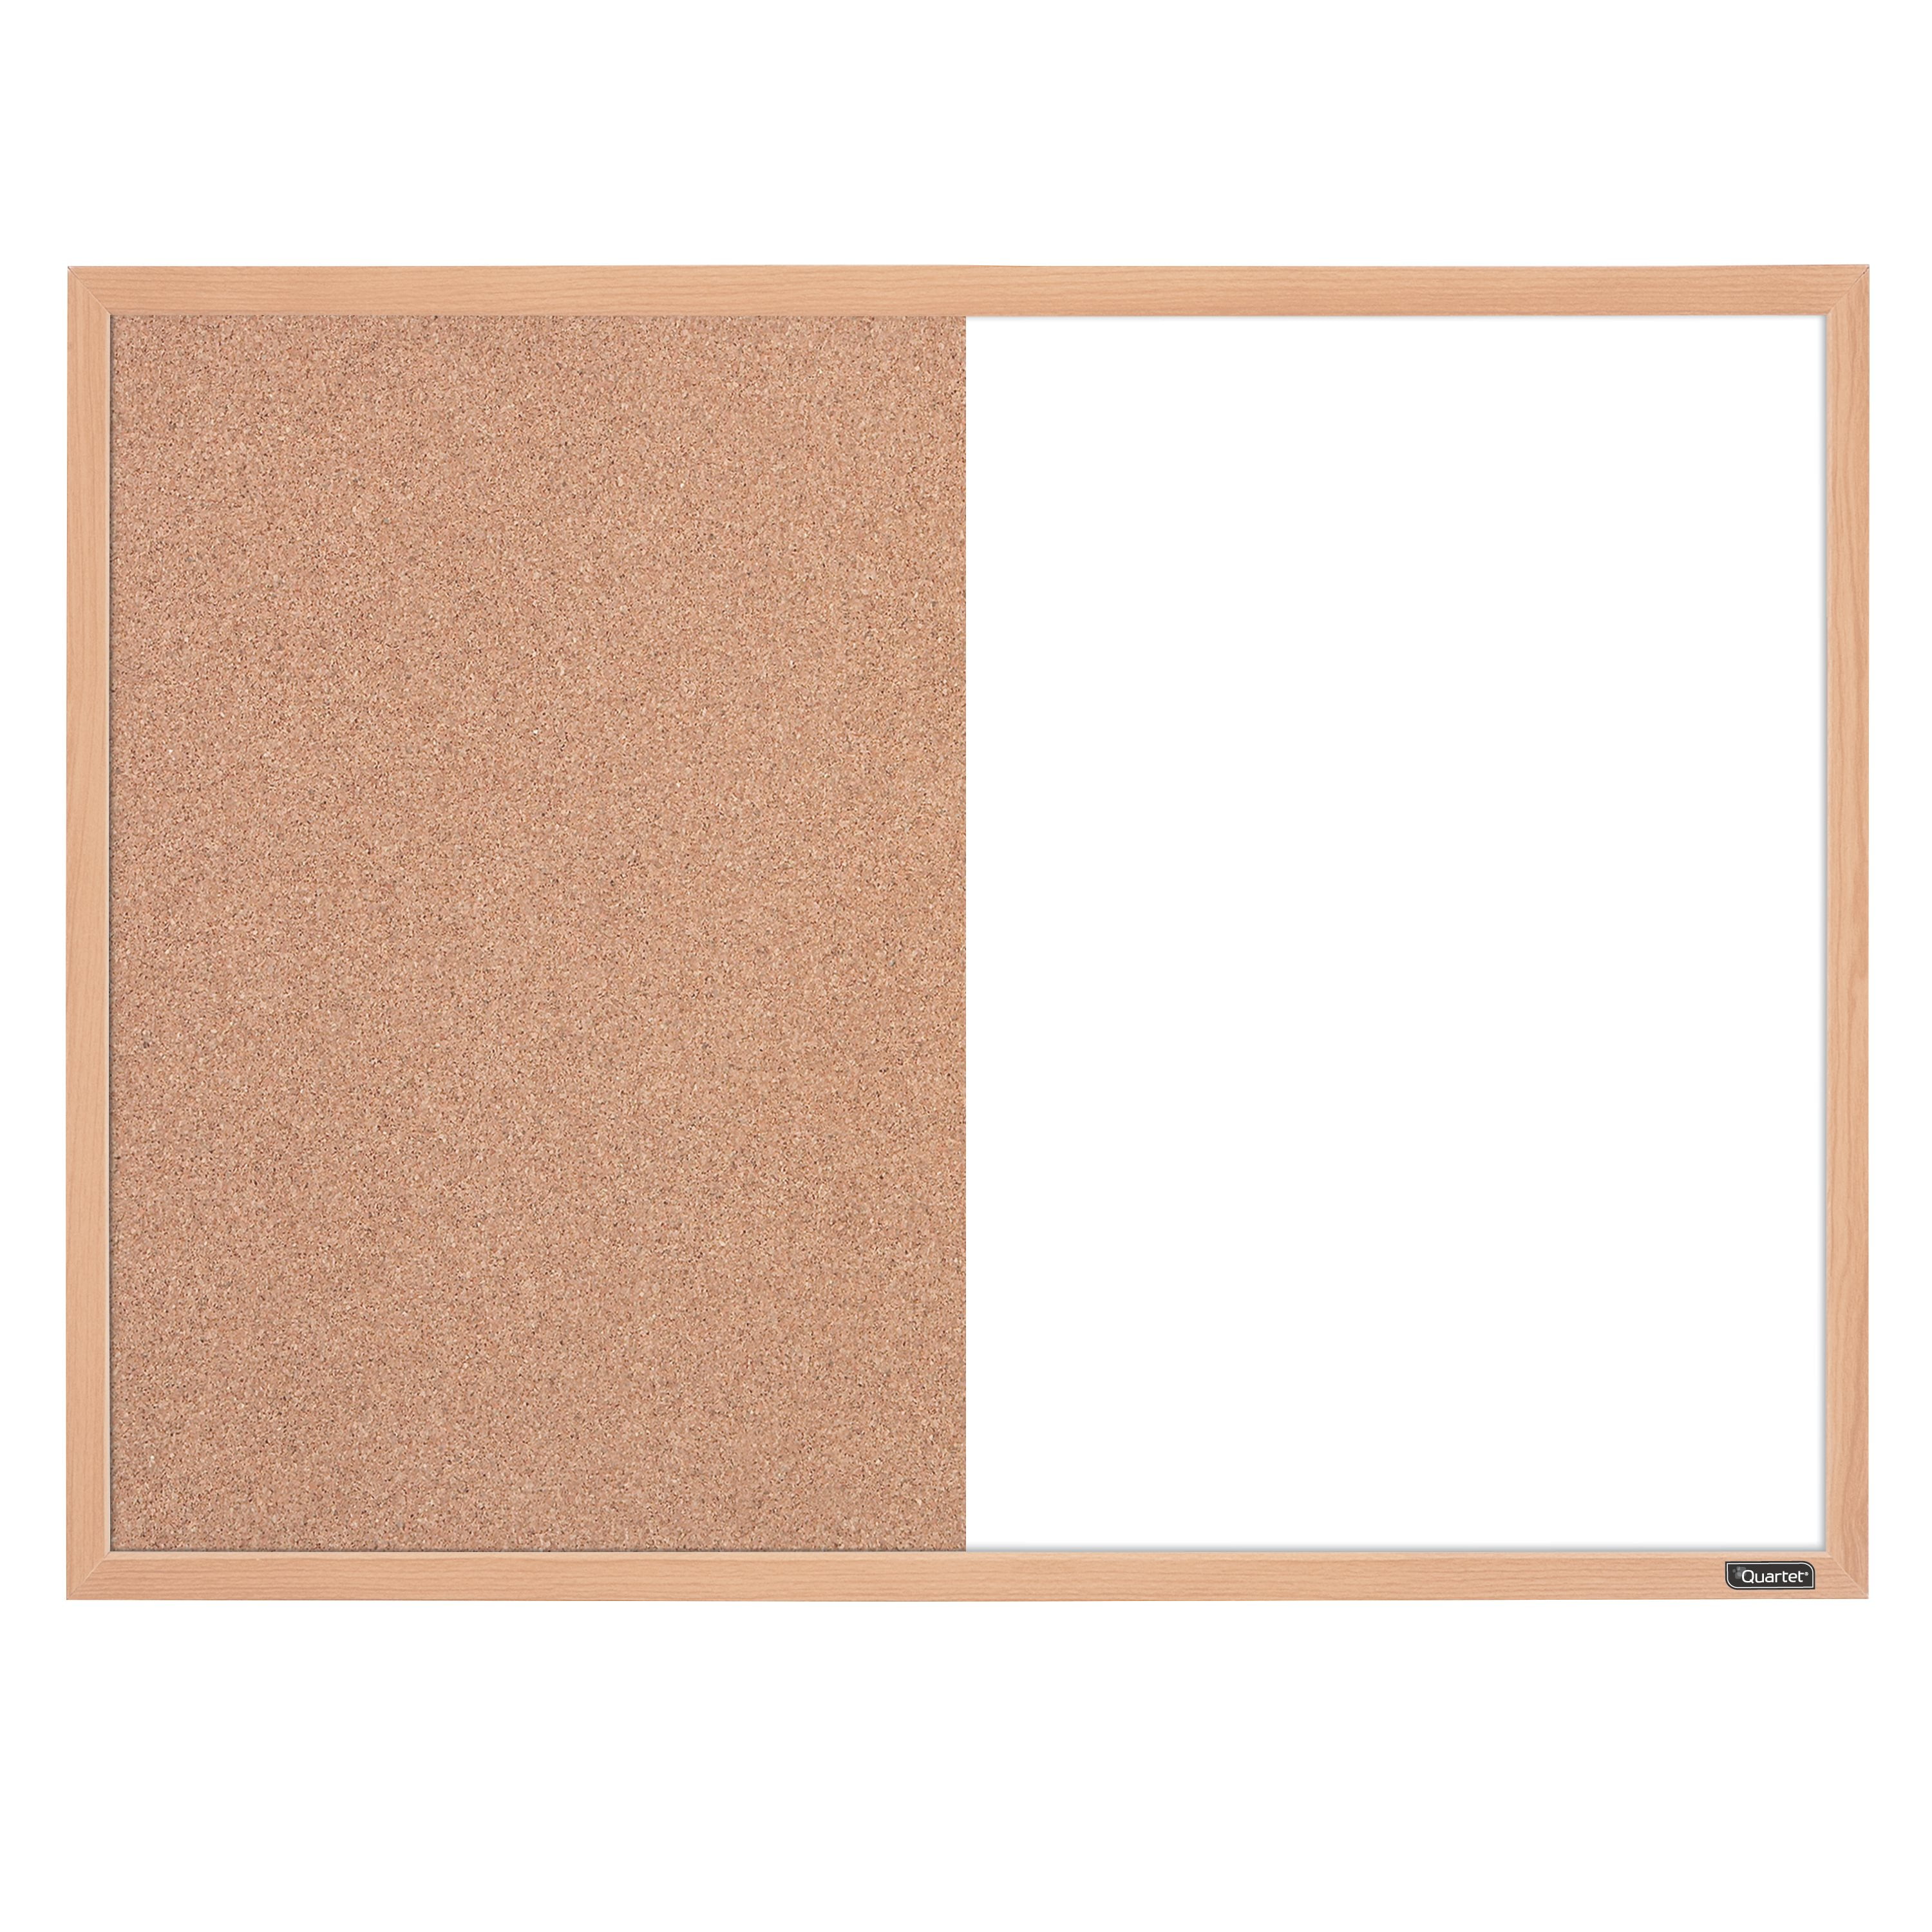 17 x 23 Inches Espresso Dry-Erase/Cork Quartet Home Decor Combination Board 